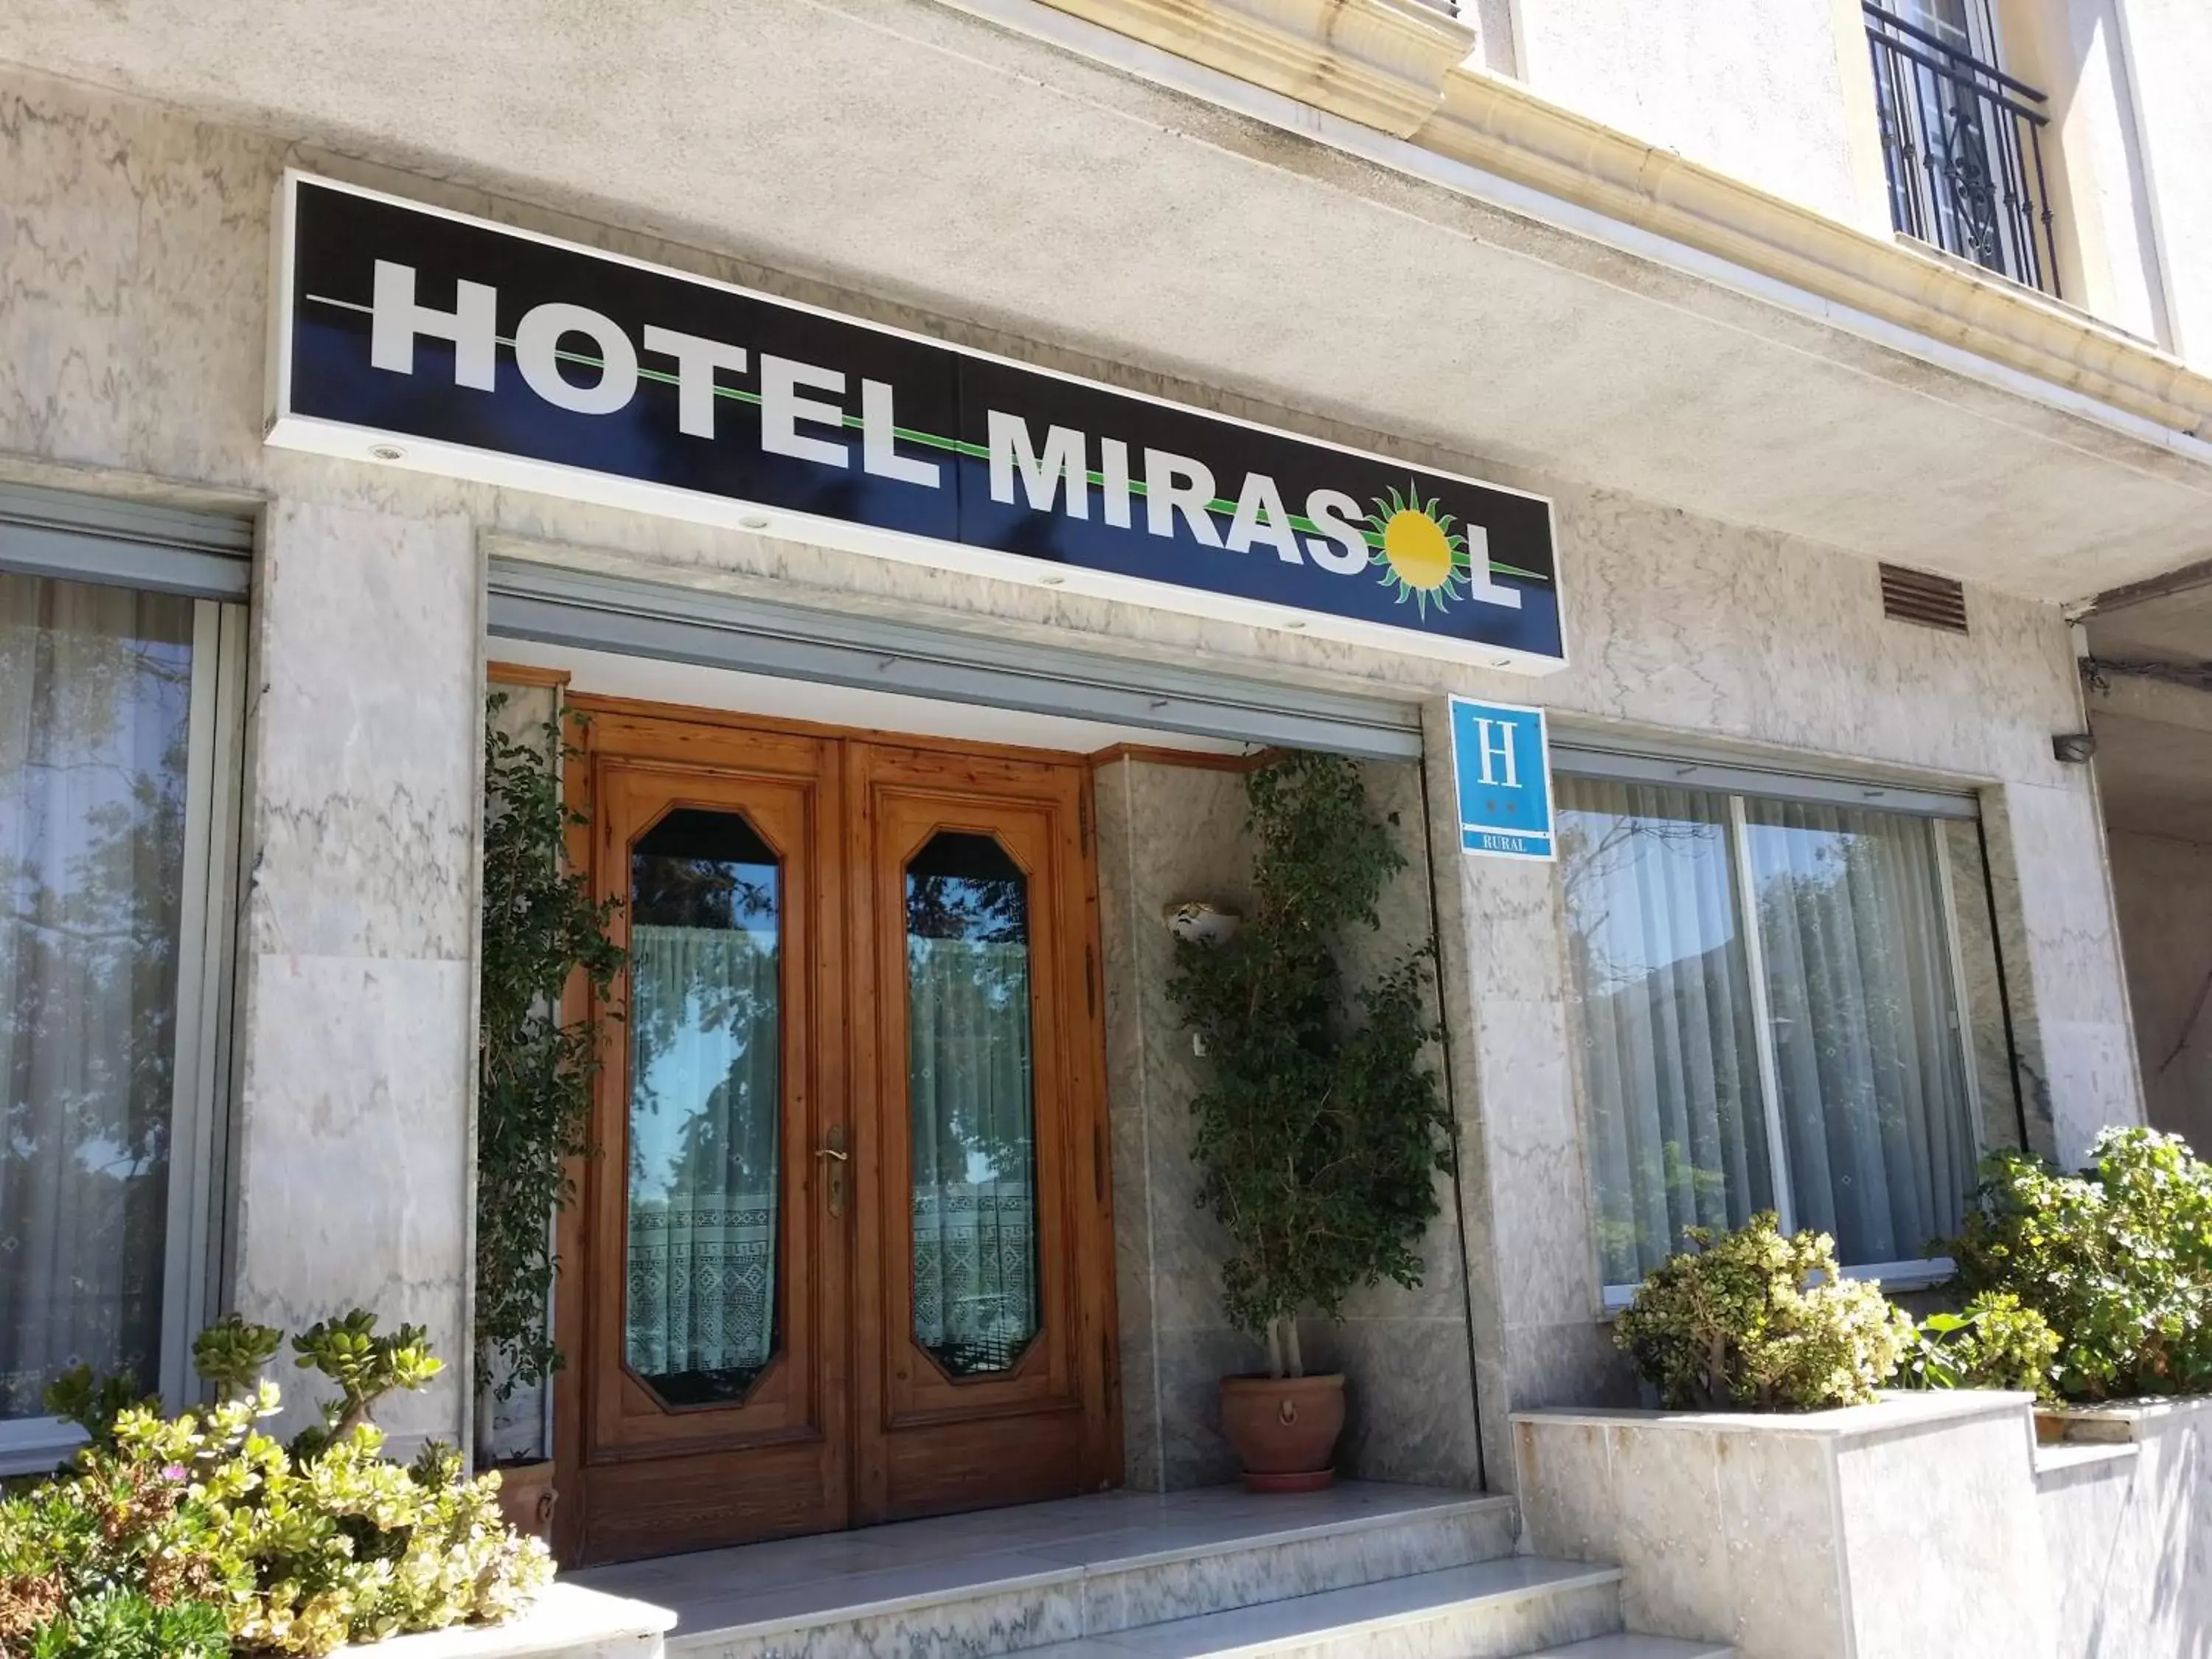 Facade/entrance in Hotel Mirasol